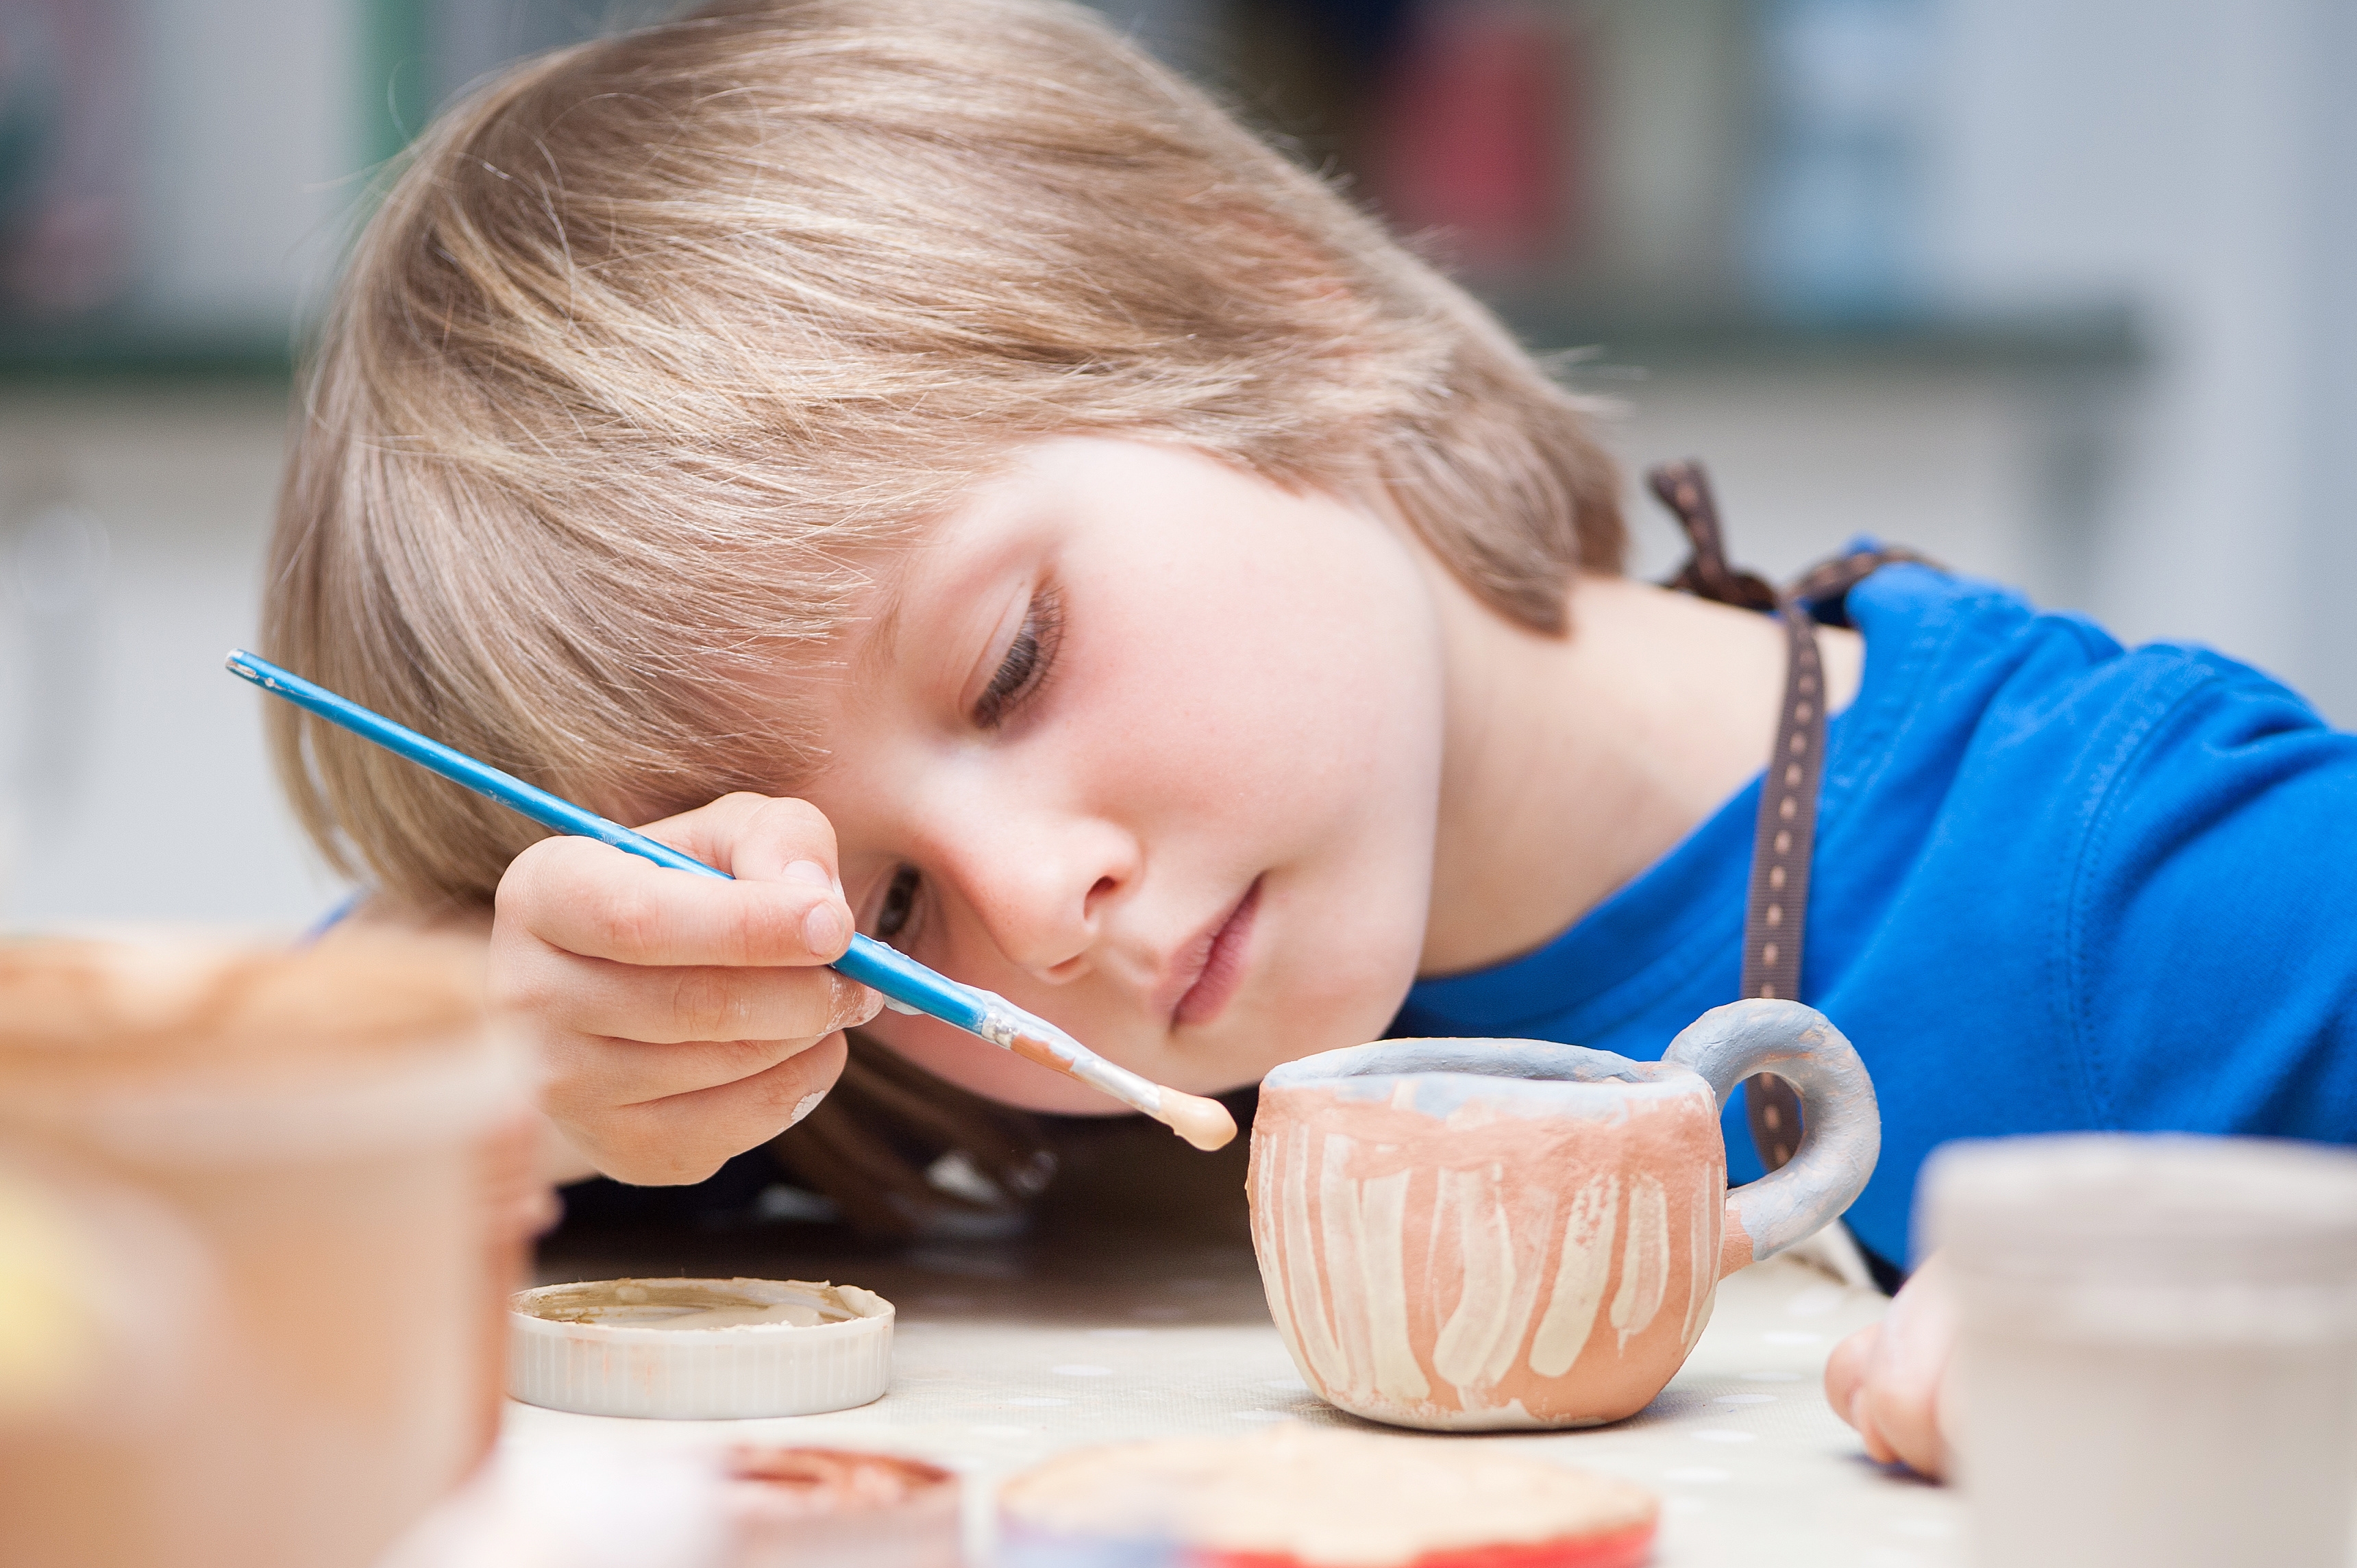 Kids' Pottery Workshop: Make Your Own Eggcup - Workshops ...